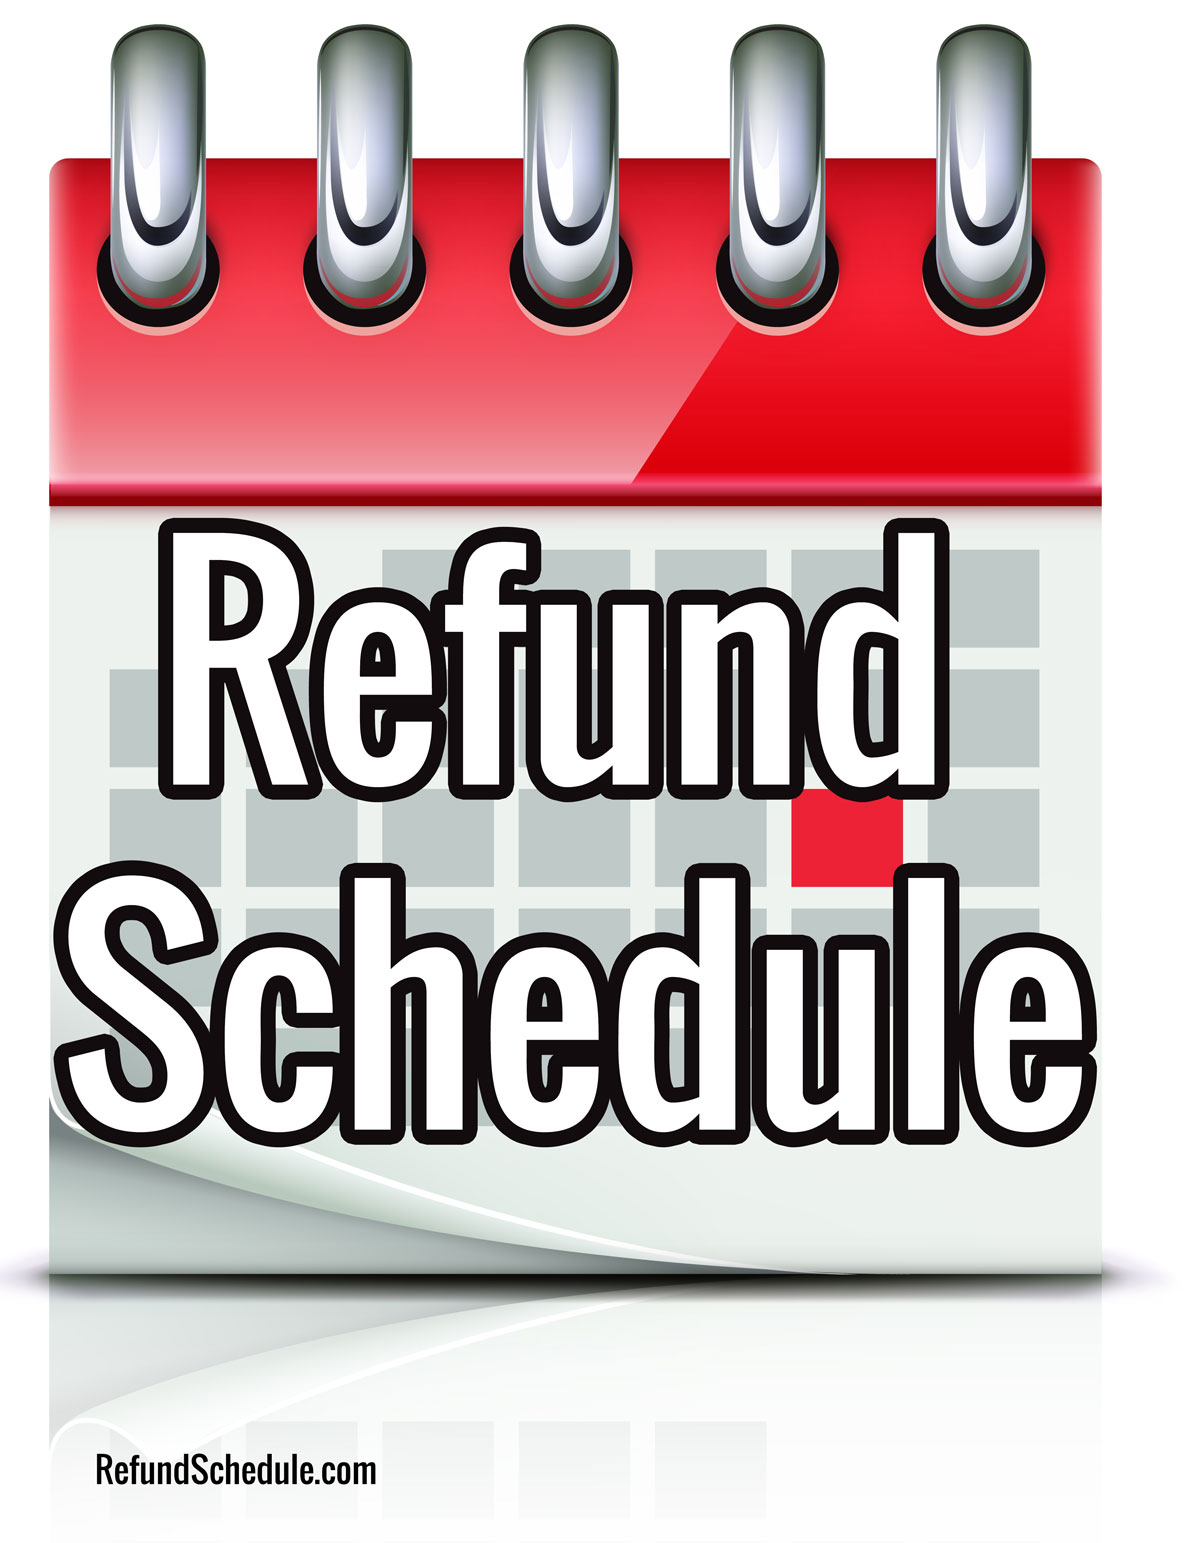 irs-tax-refund-update-2021-tax-refund-and-amended-tax-returns-still